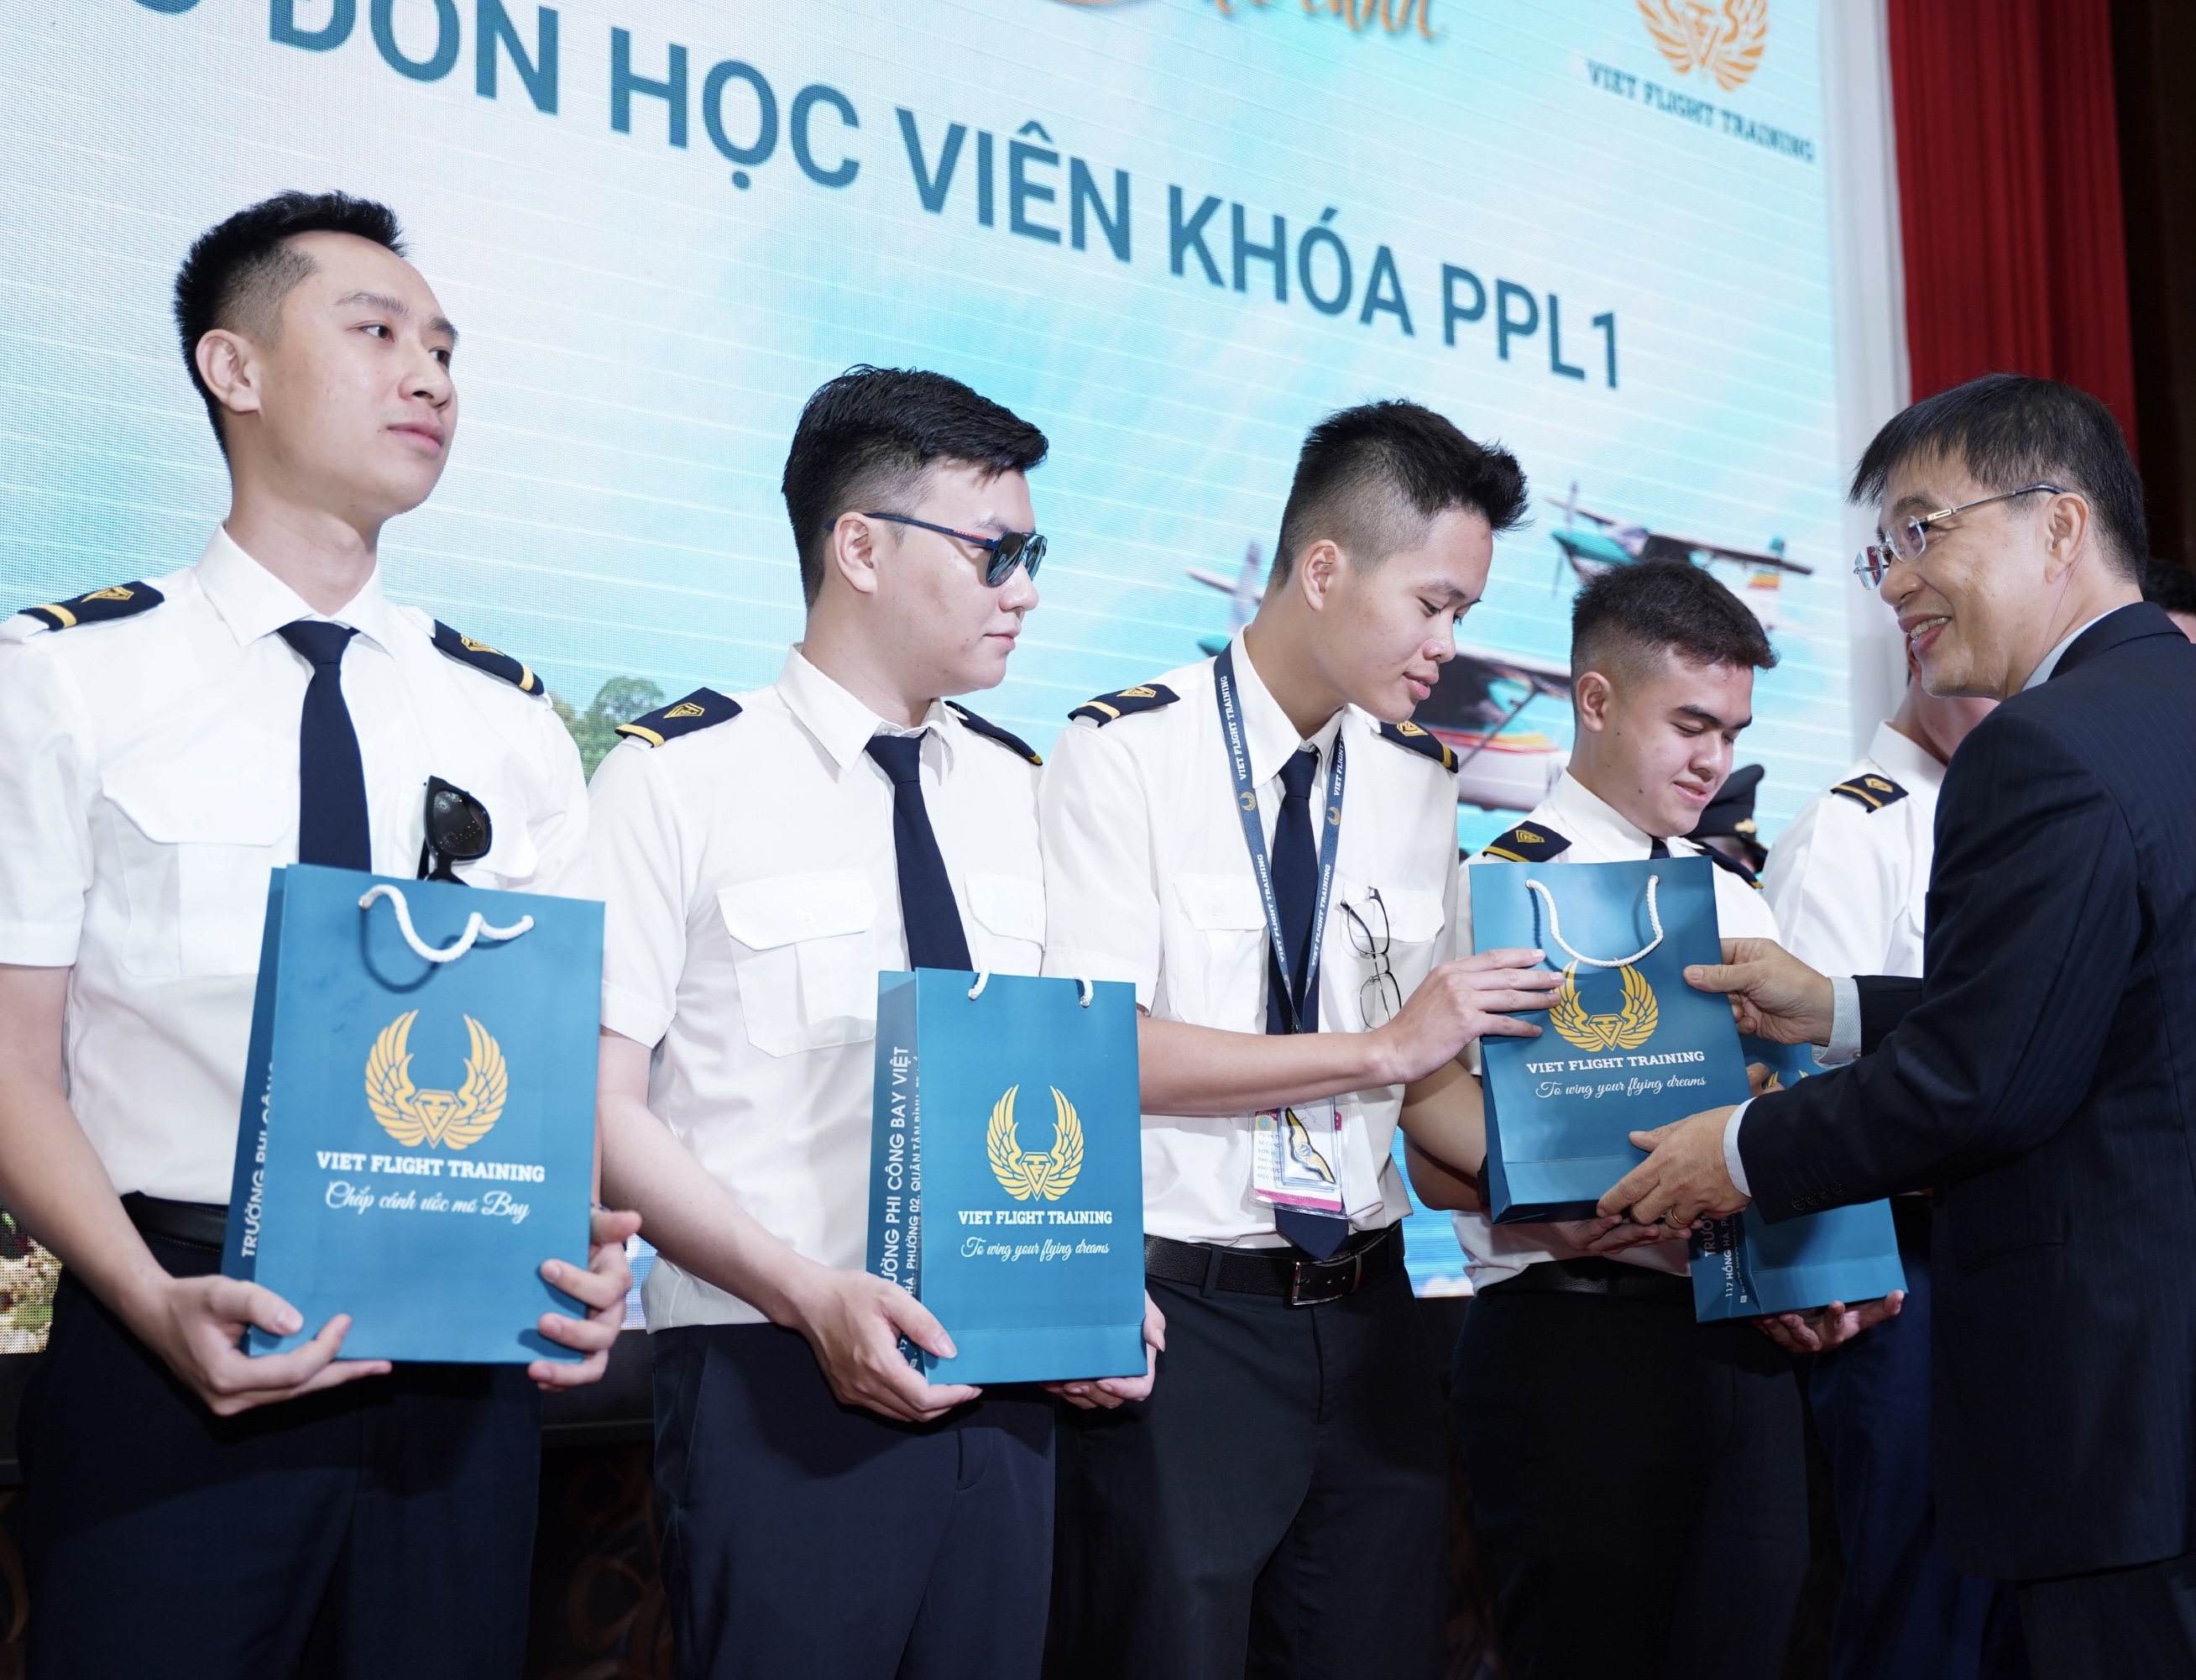 Vietnam Airlines khánh thành trường phi công Bay Việt tại Rạch Giá -0